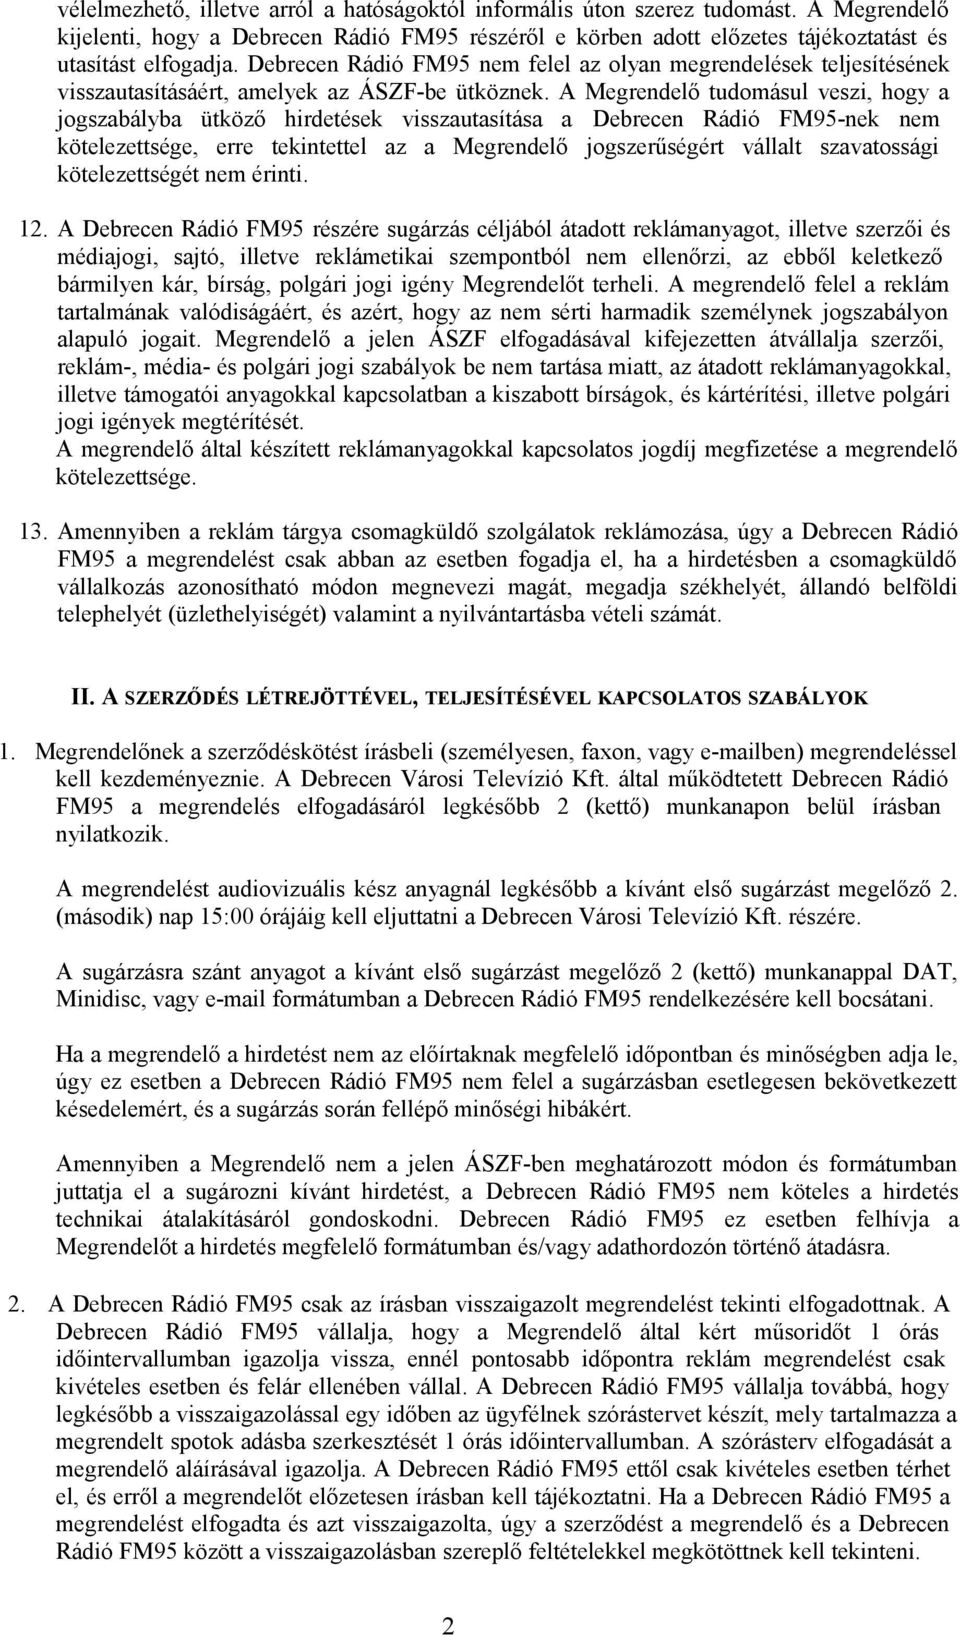 A Megrendelő tudomásul veszi, hogy a jogszabályba ütköző hirdetések visszautasítása a Debrecen Rádió FM95-nek nem kötelezettsége, erre tekintettel az a Megrendelő jogszerűségért vállalt szavatossági